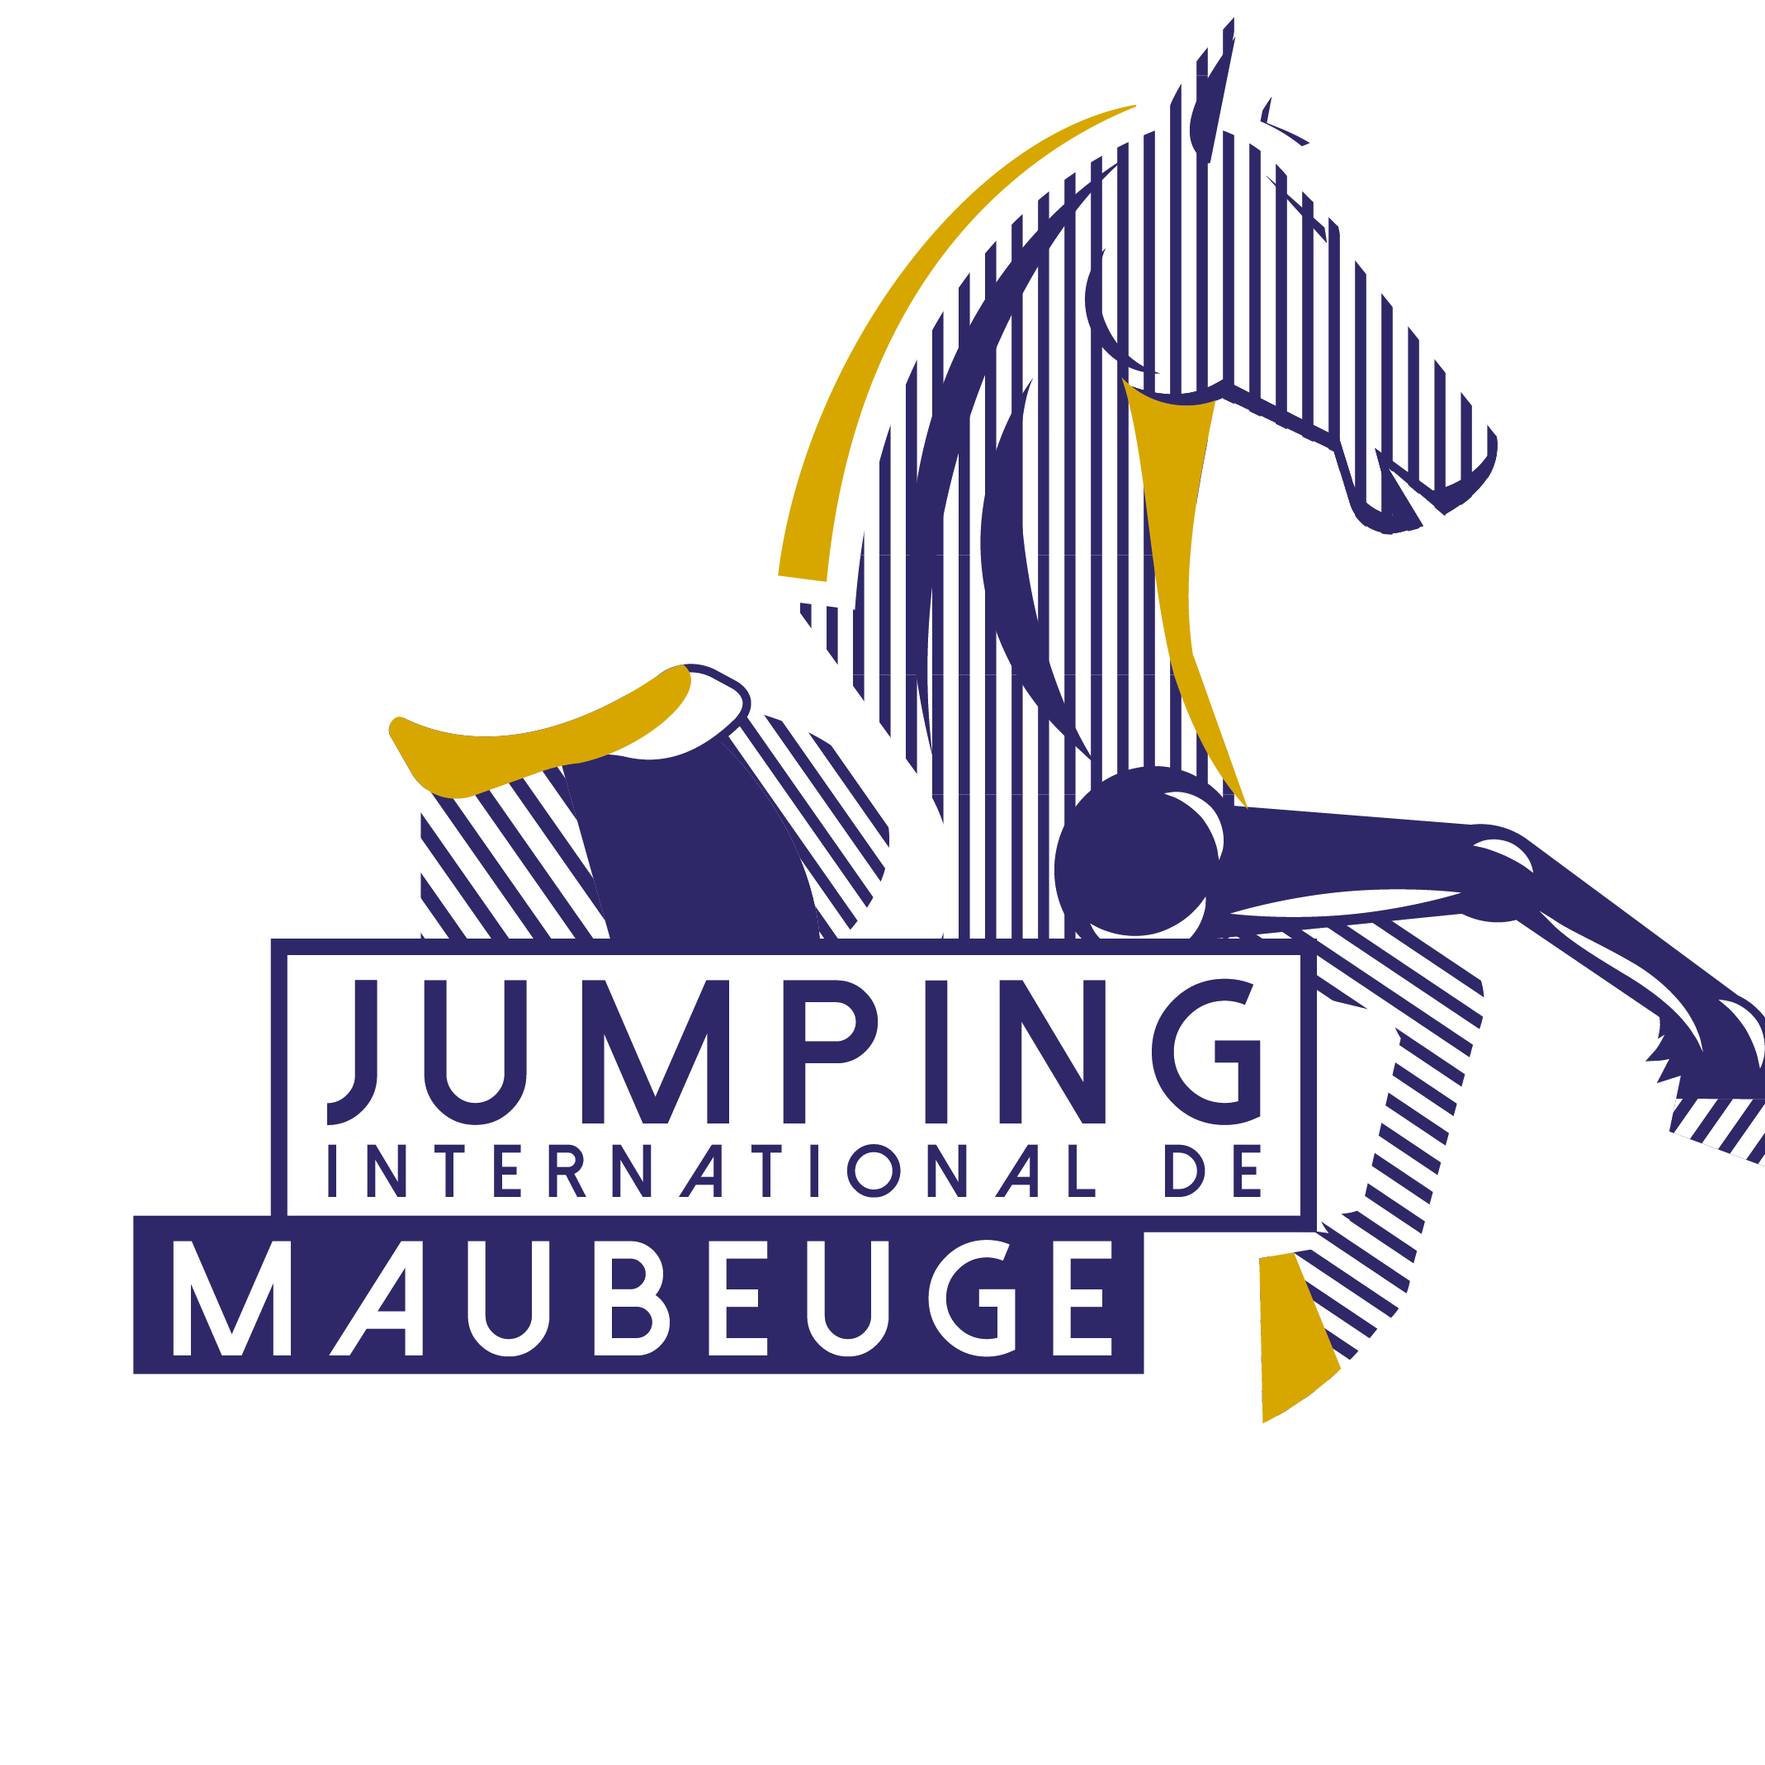 Jumping international de Maubeuge